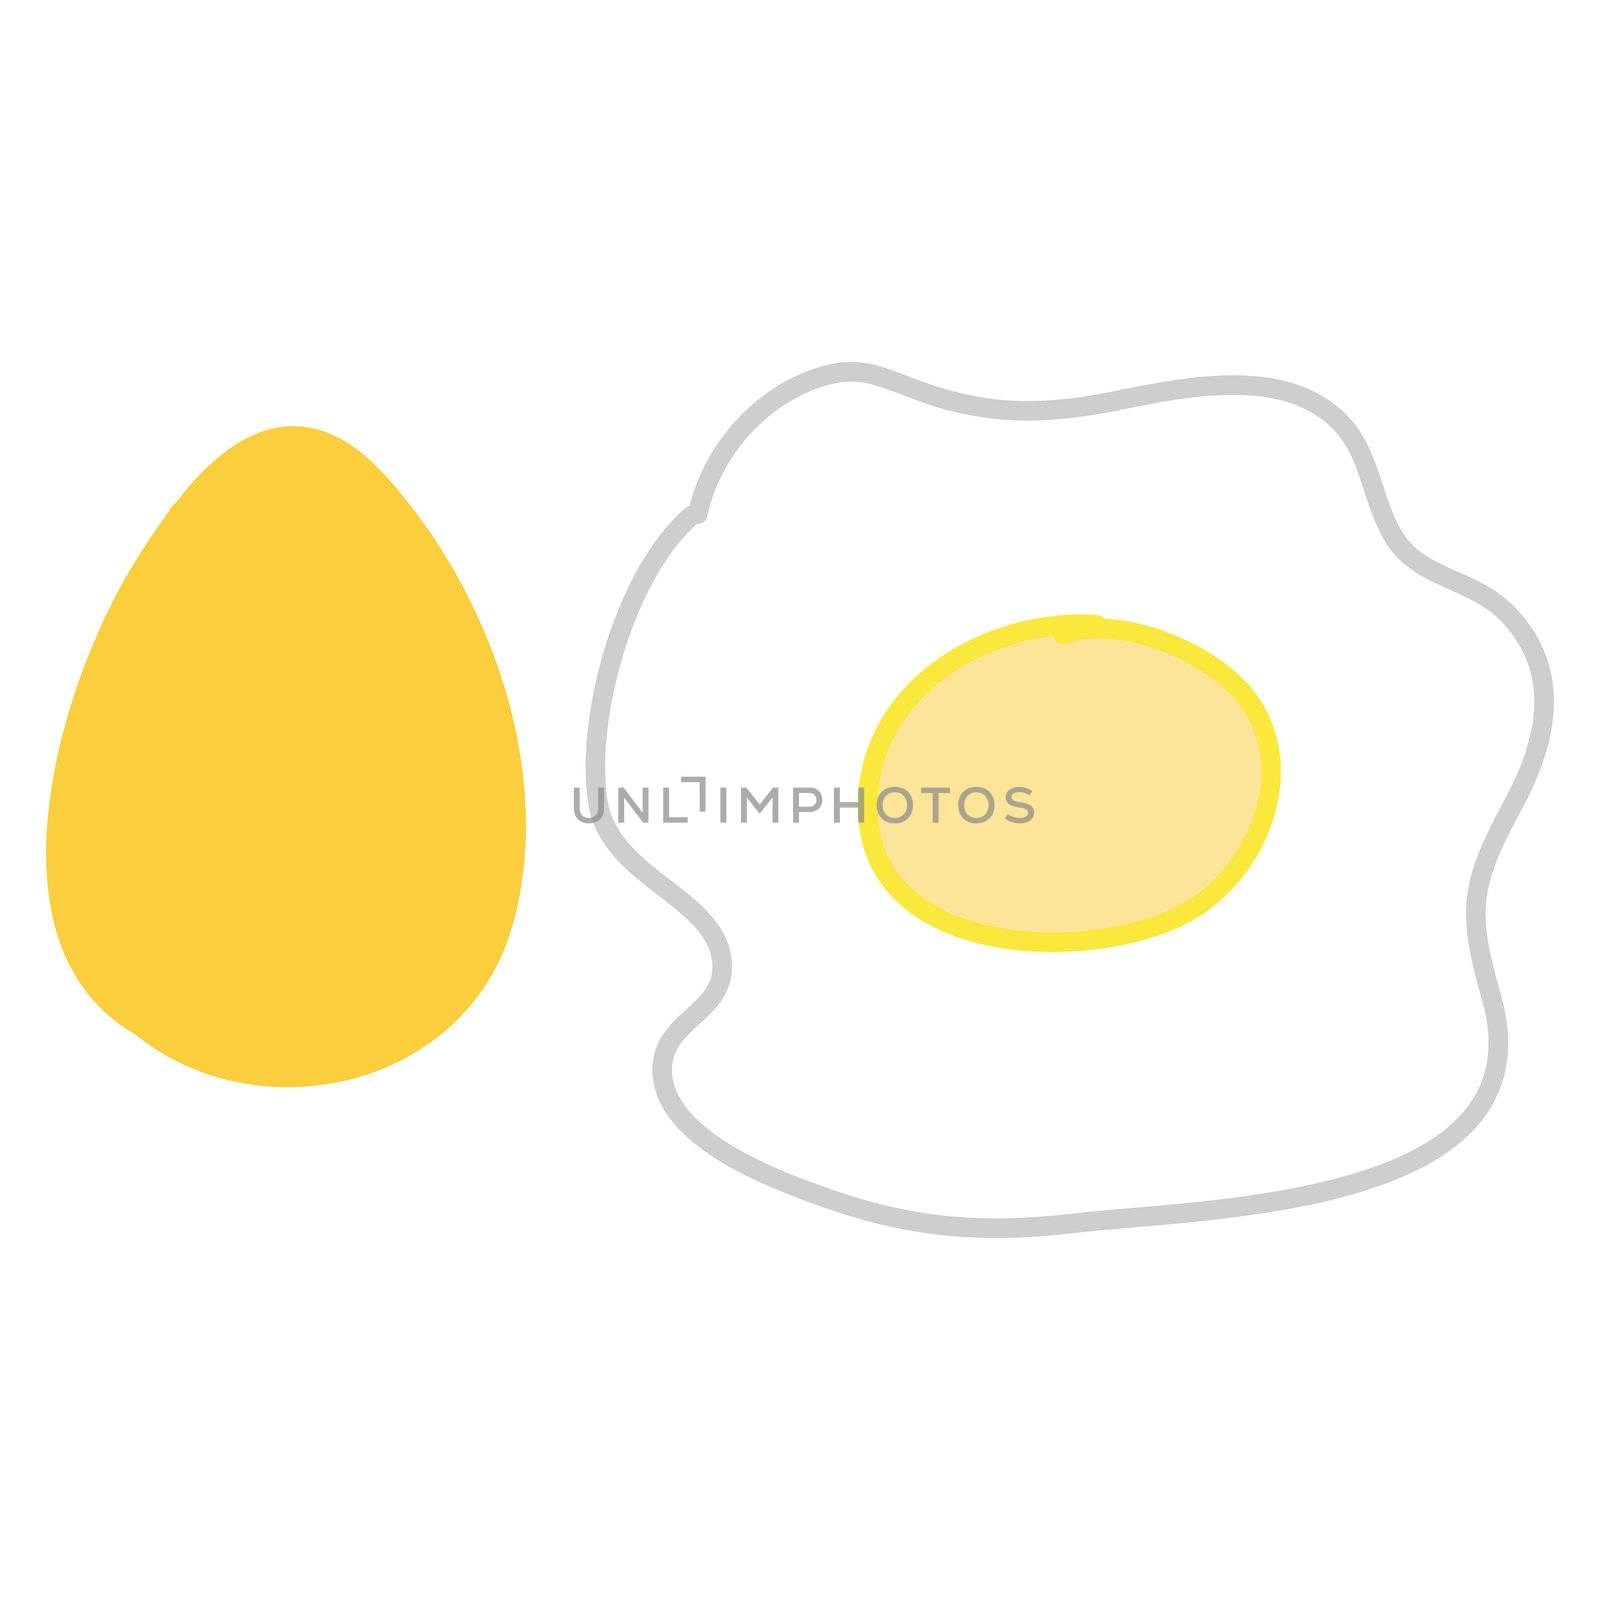 Fried egg by jukurae